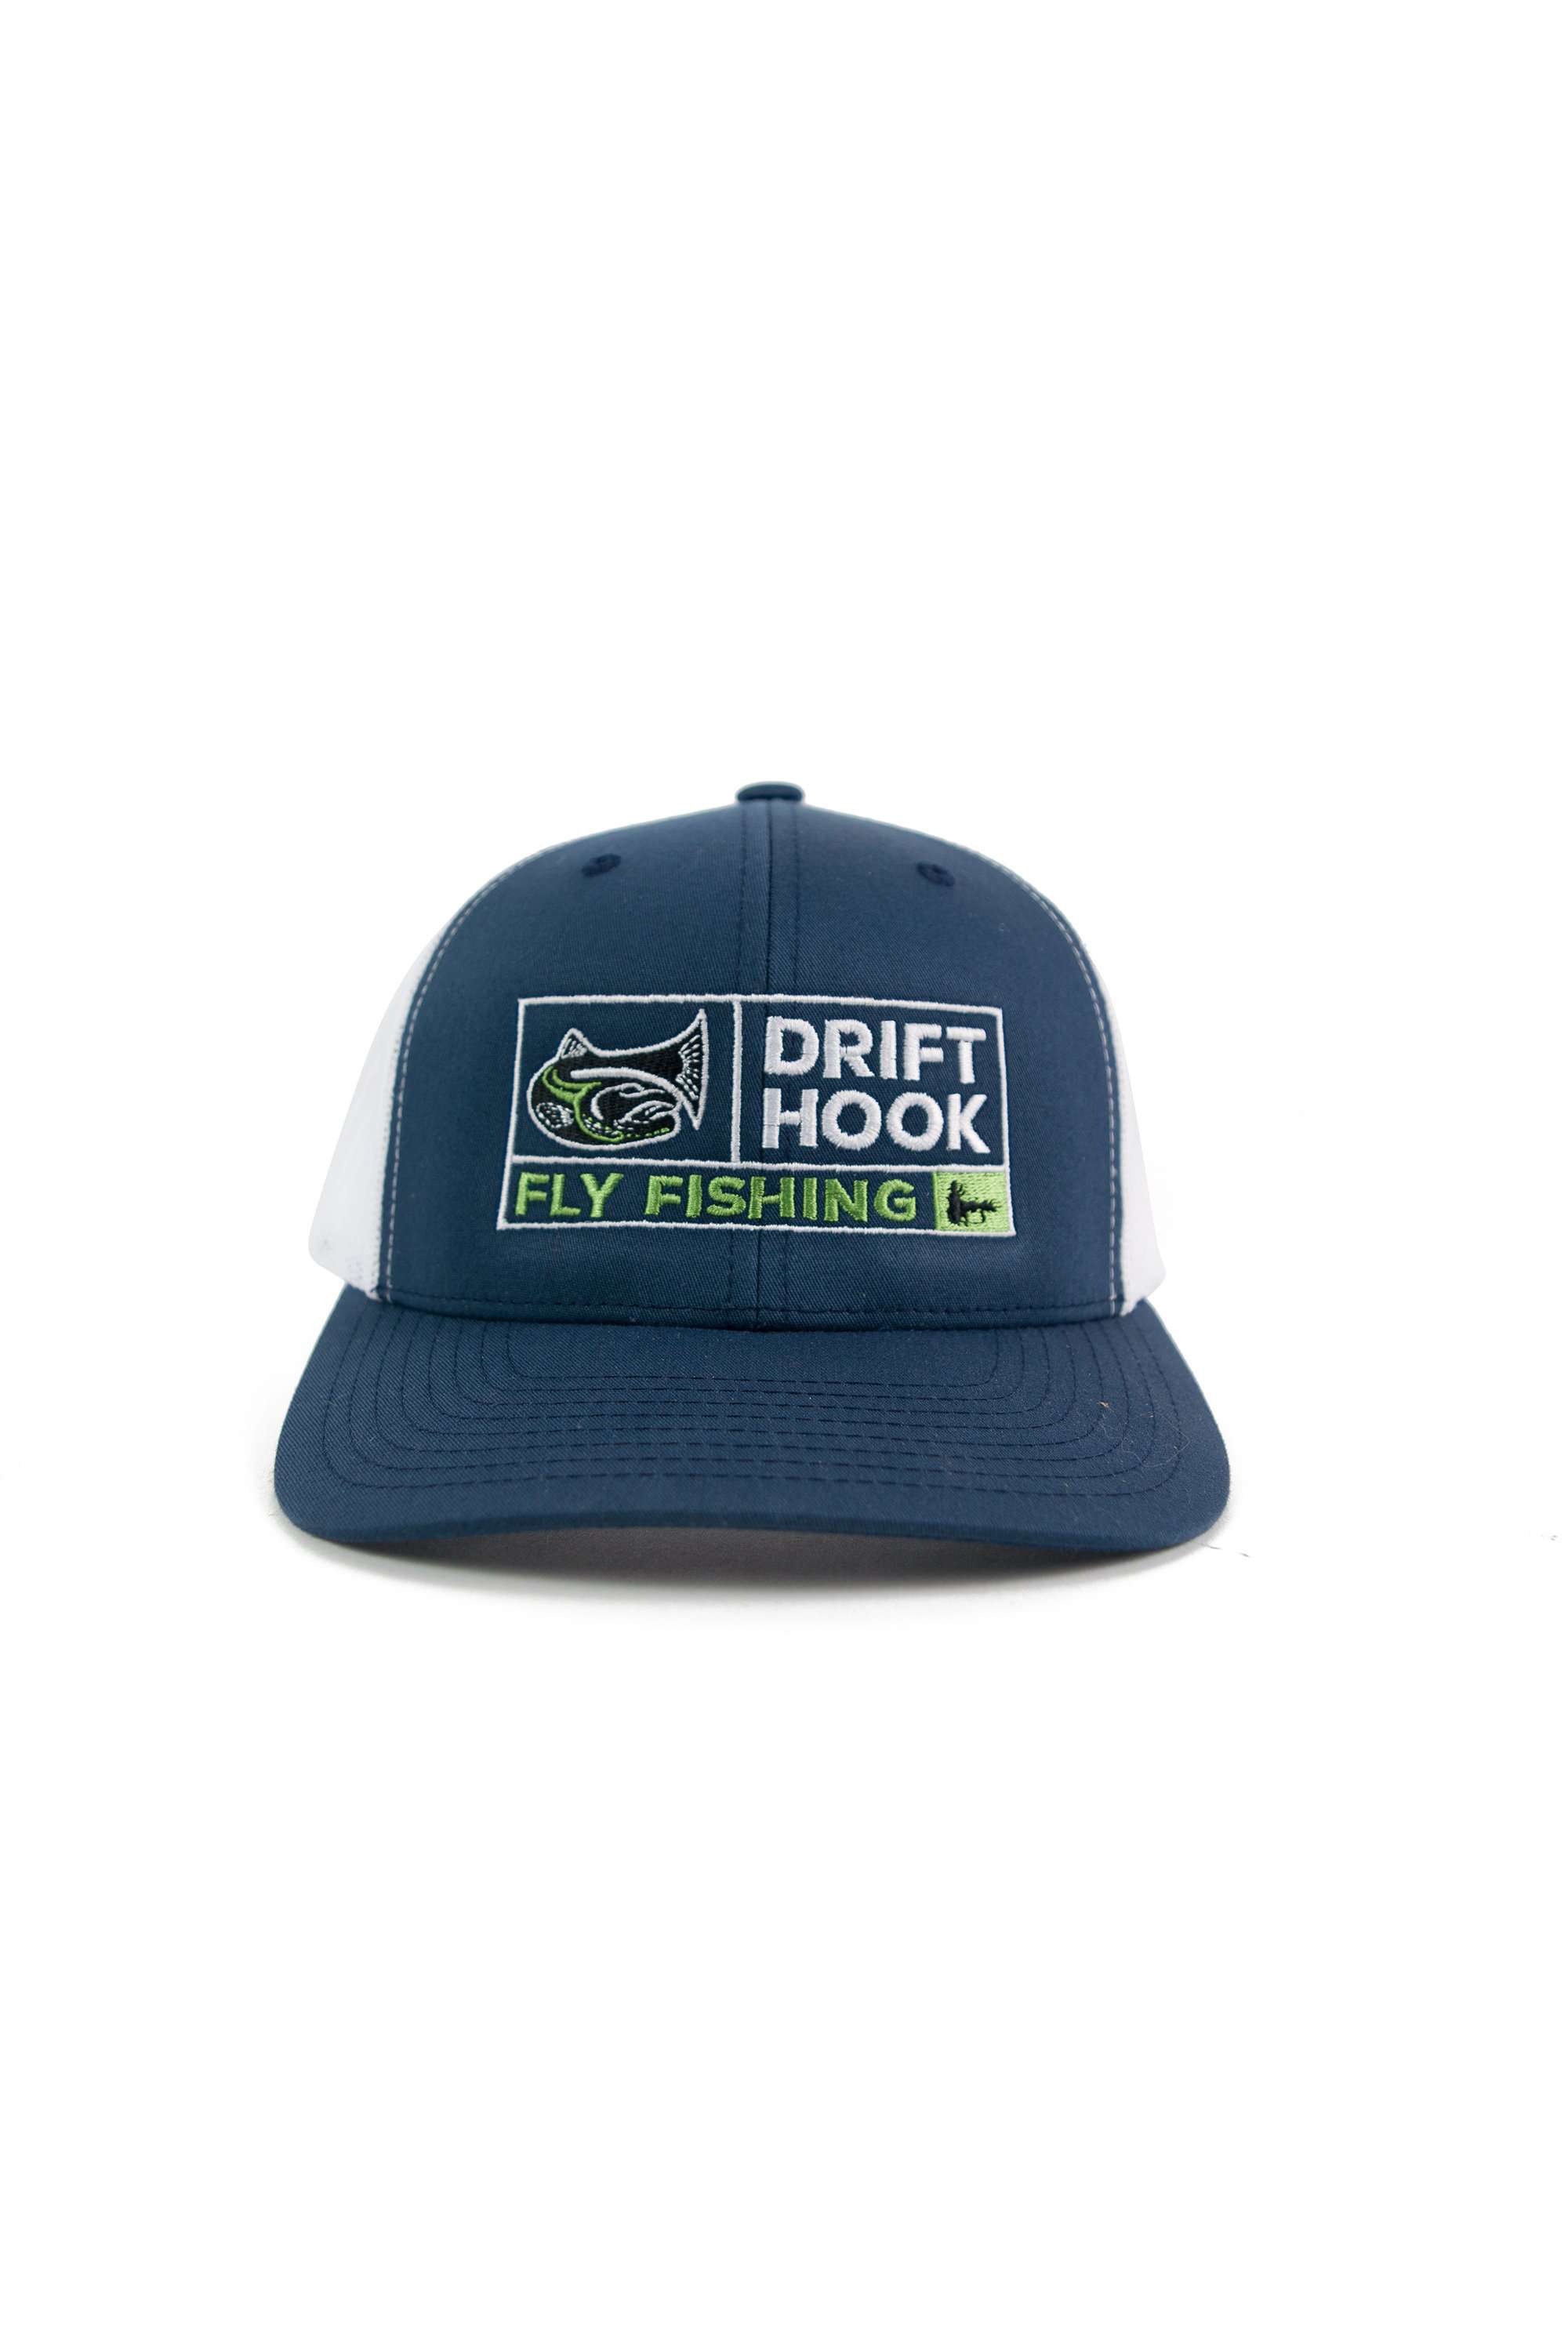 Drifthook Trucker Cap—Blue with Box Logo - Drifthook